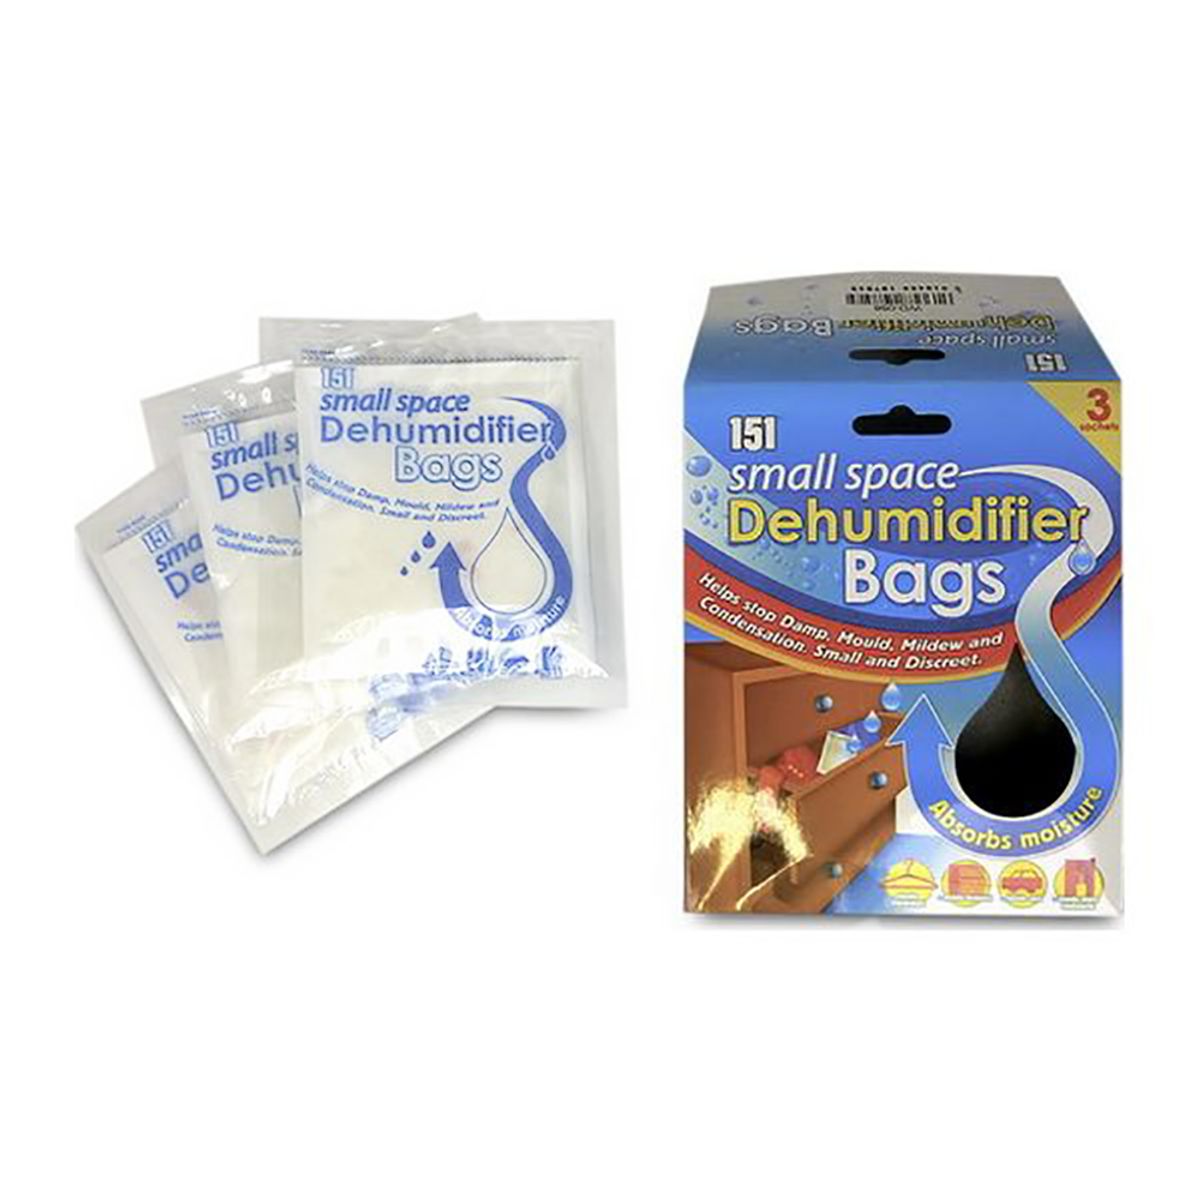 Damp bags